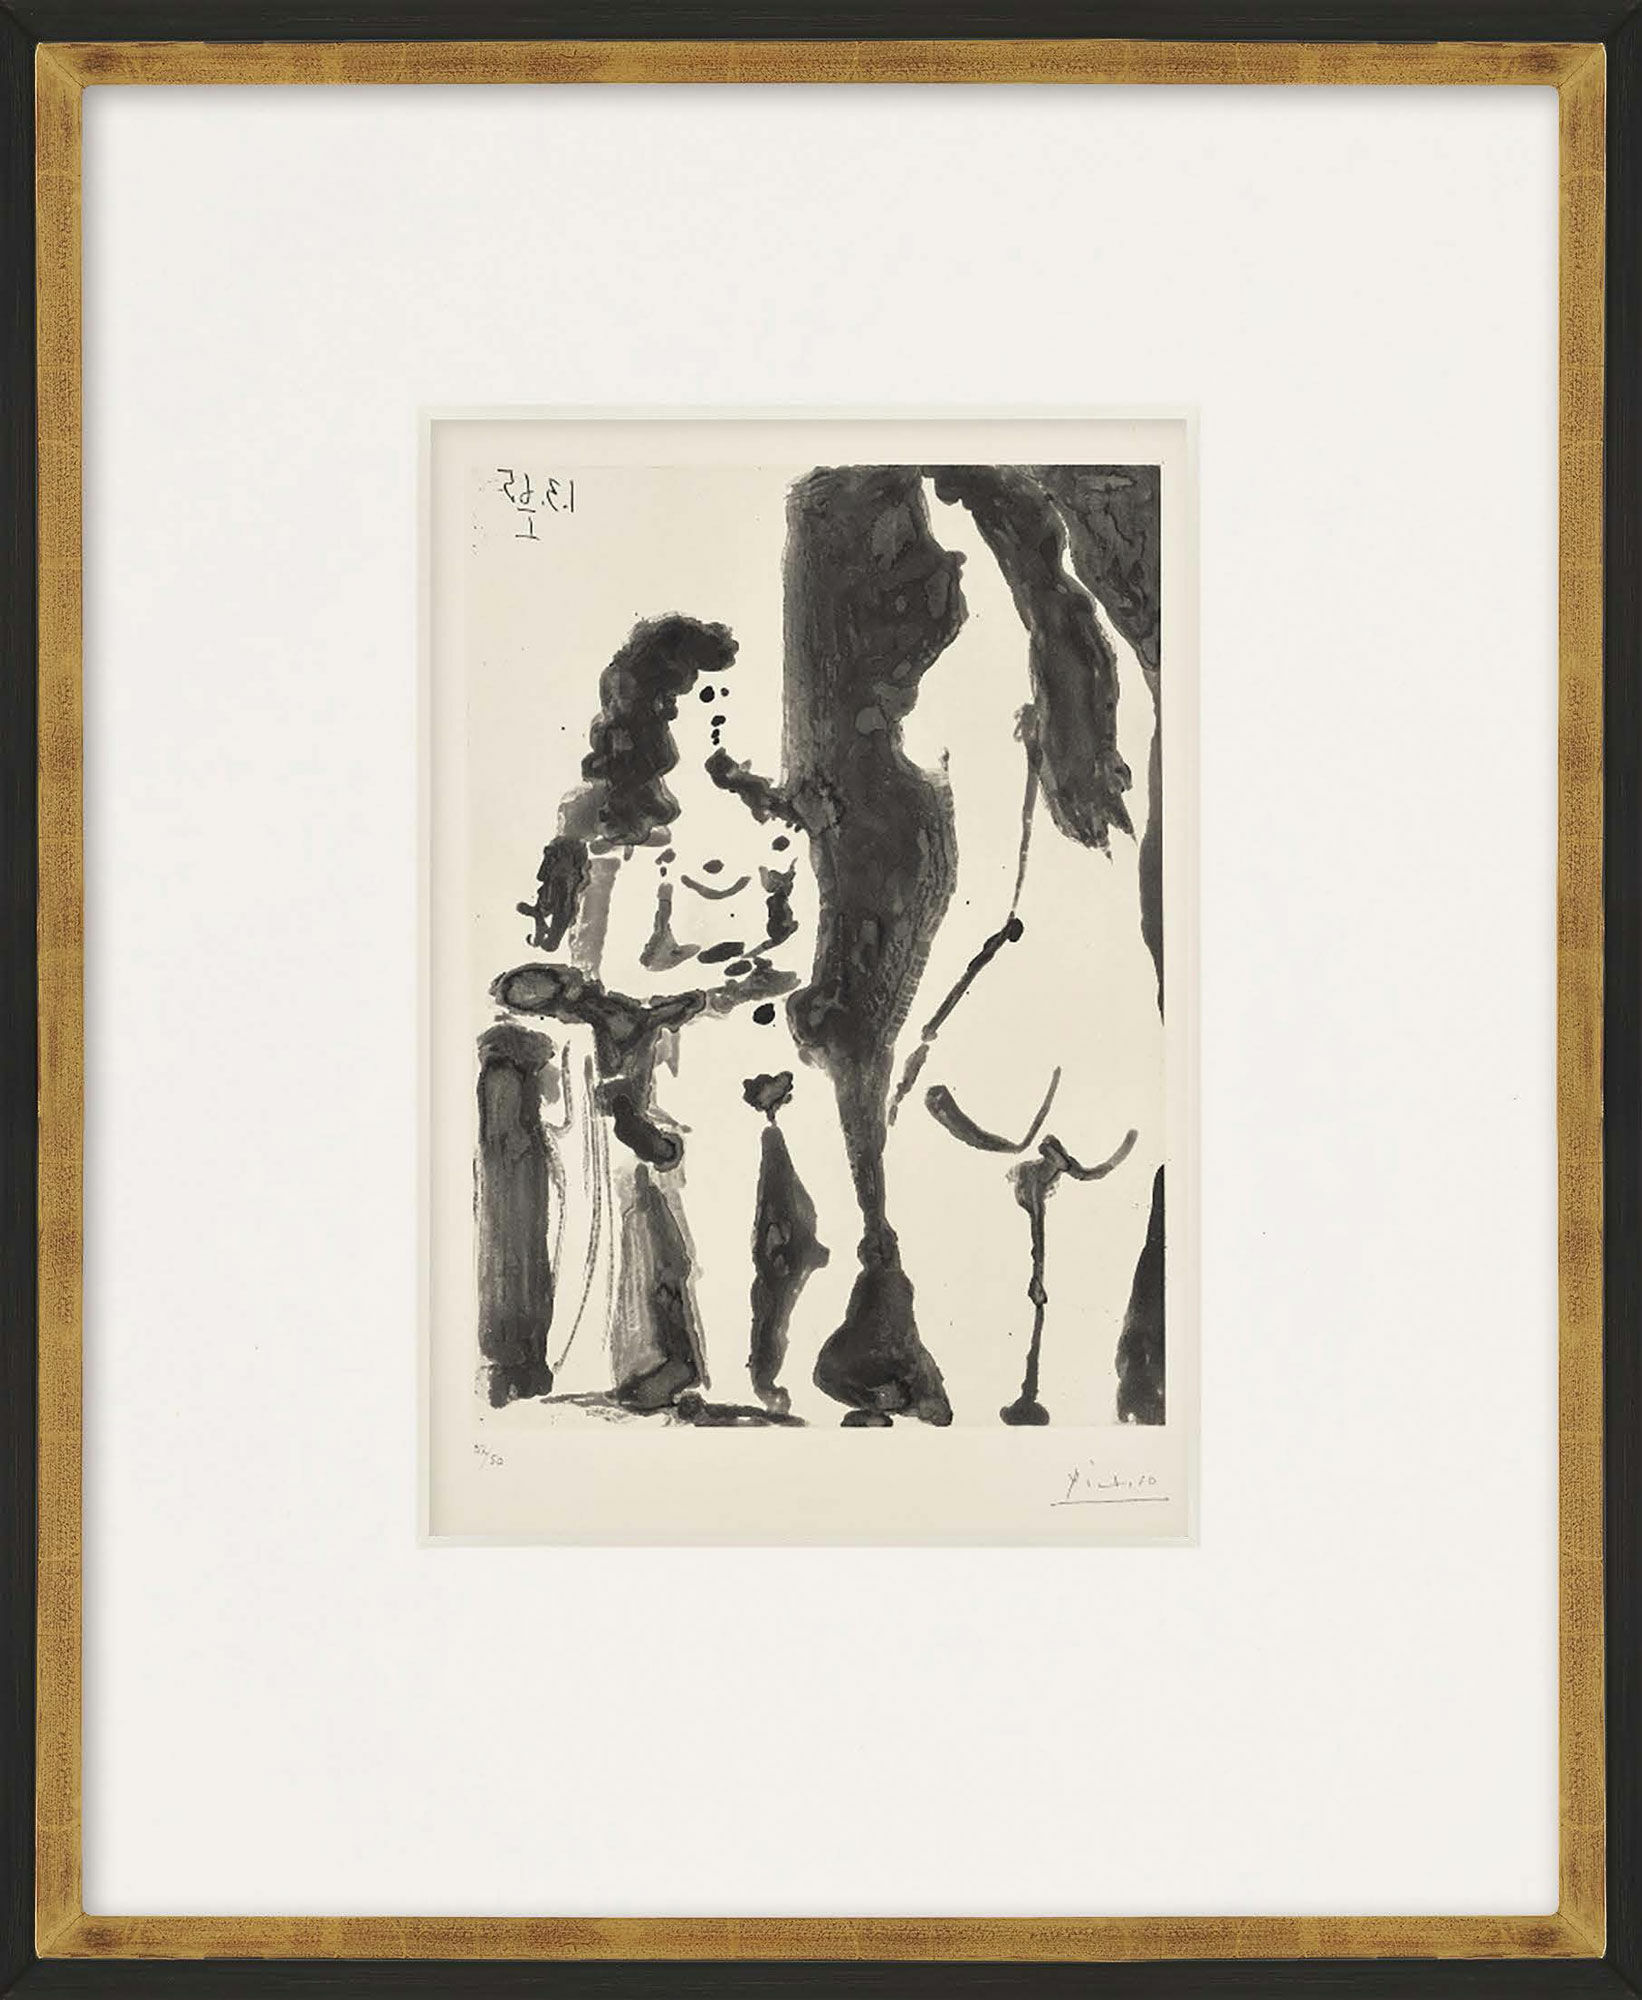 Bild "Deux femmes (Zwei Frauen)" (1965) von Pablo Picasso